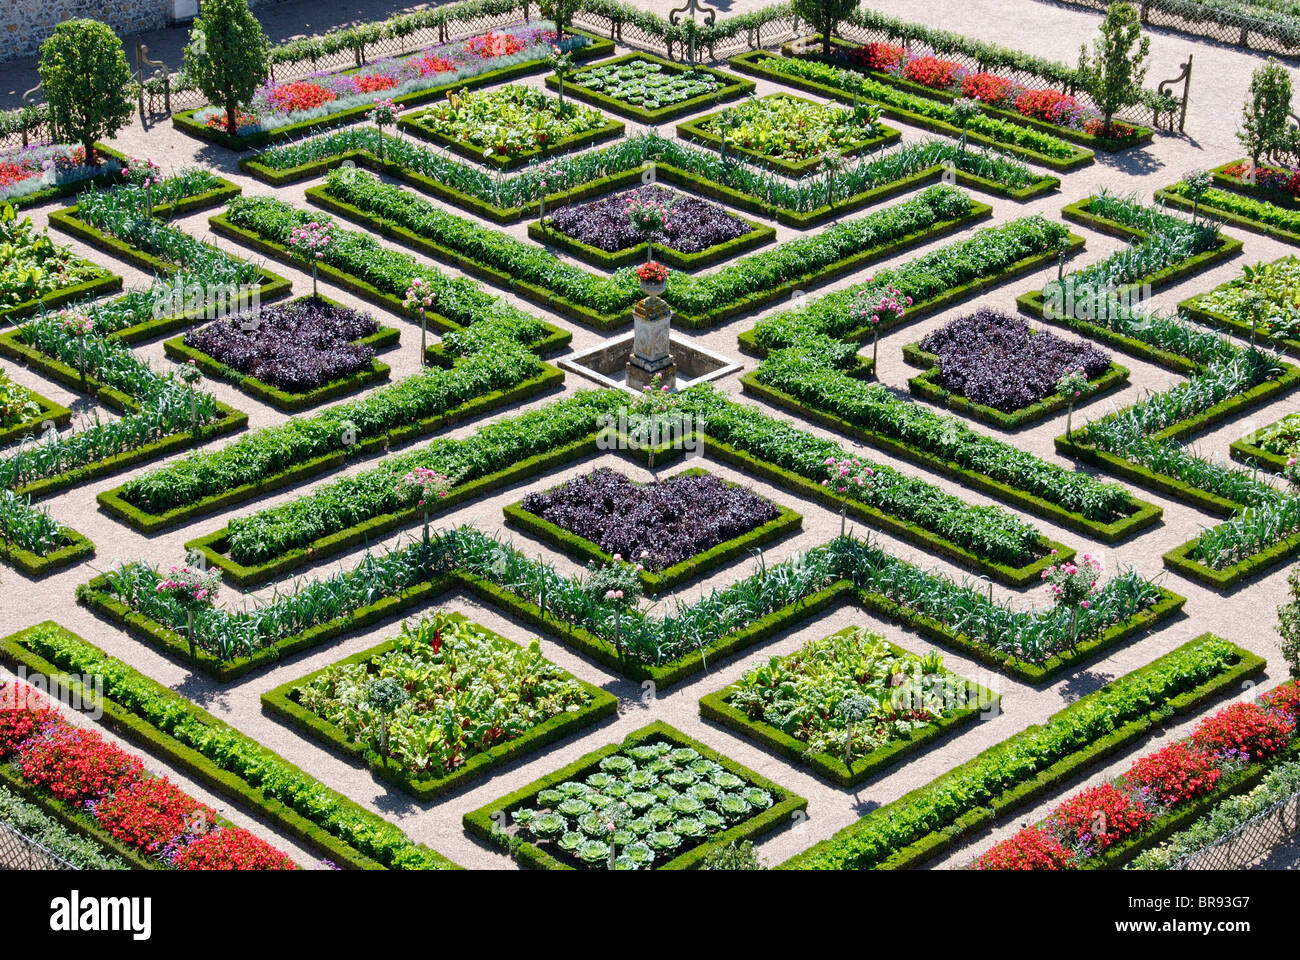 The Potager garden, Chateau de Villandry, Indre et Loire, France Stock Photo